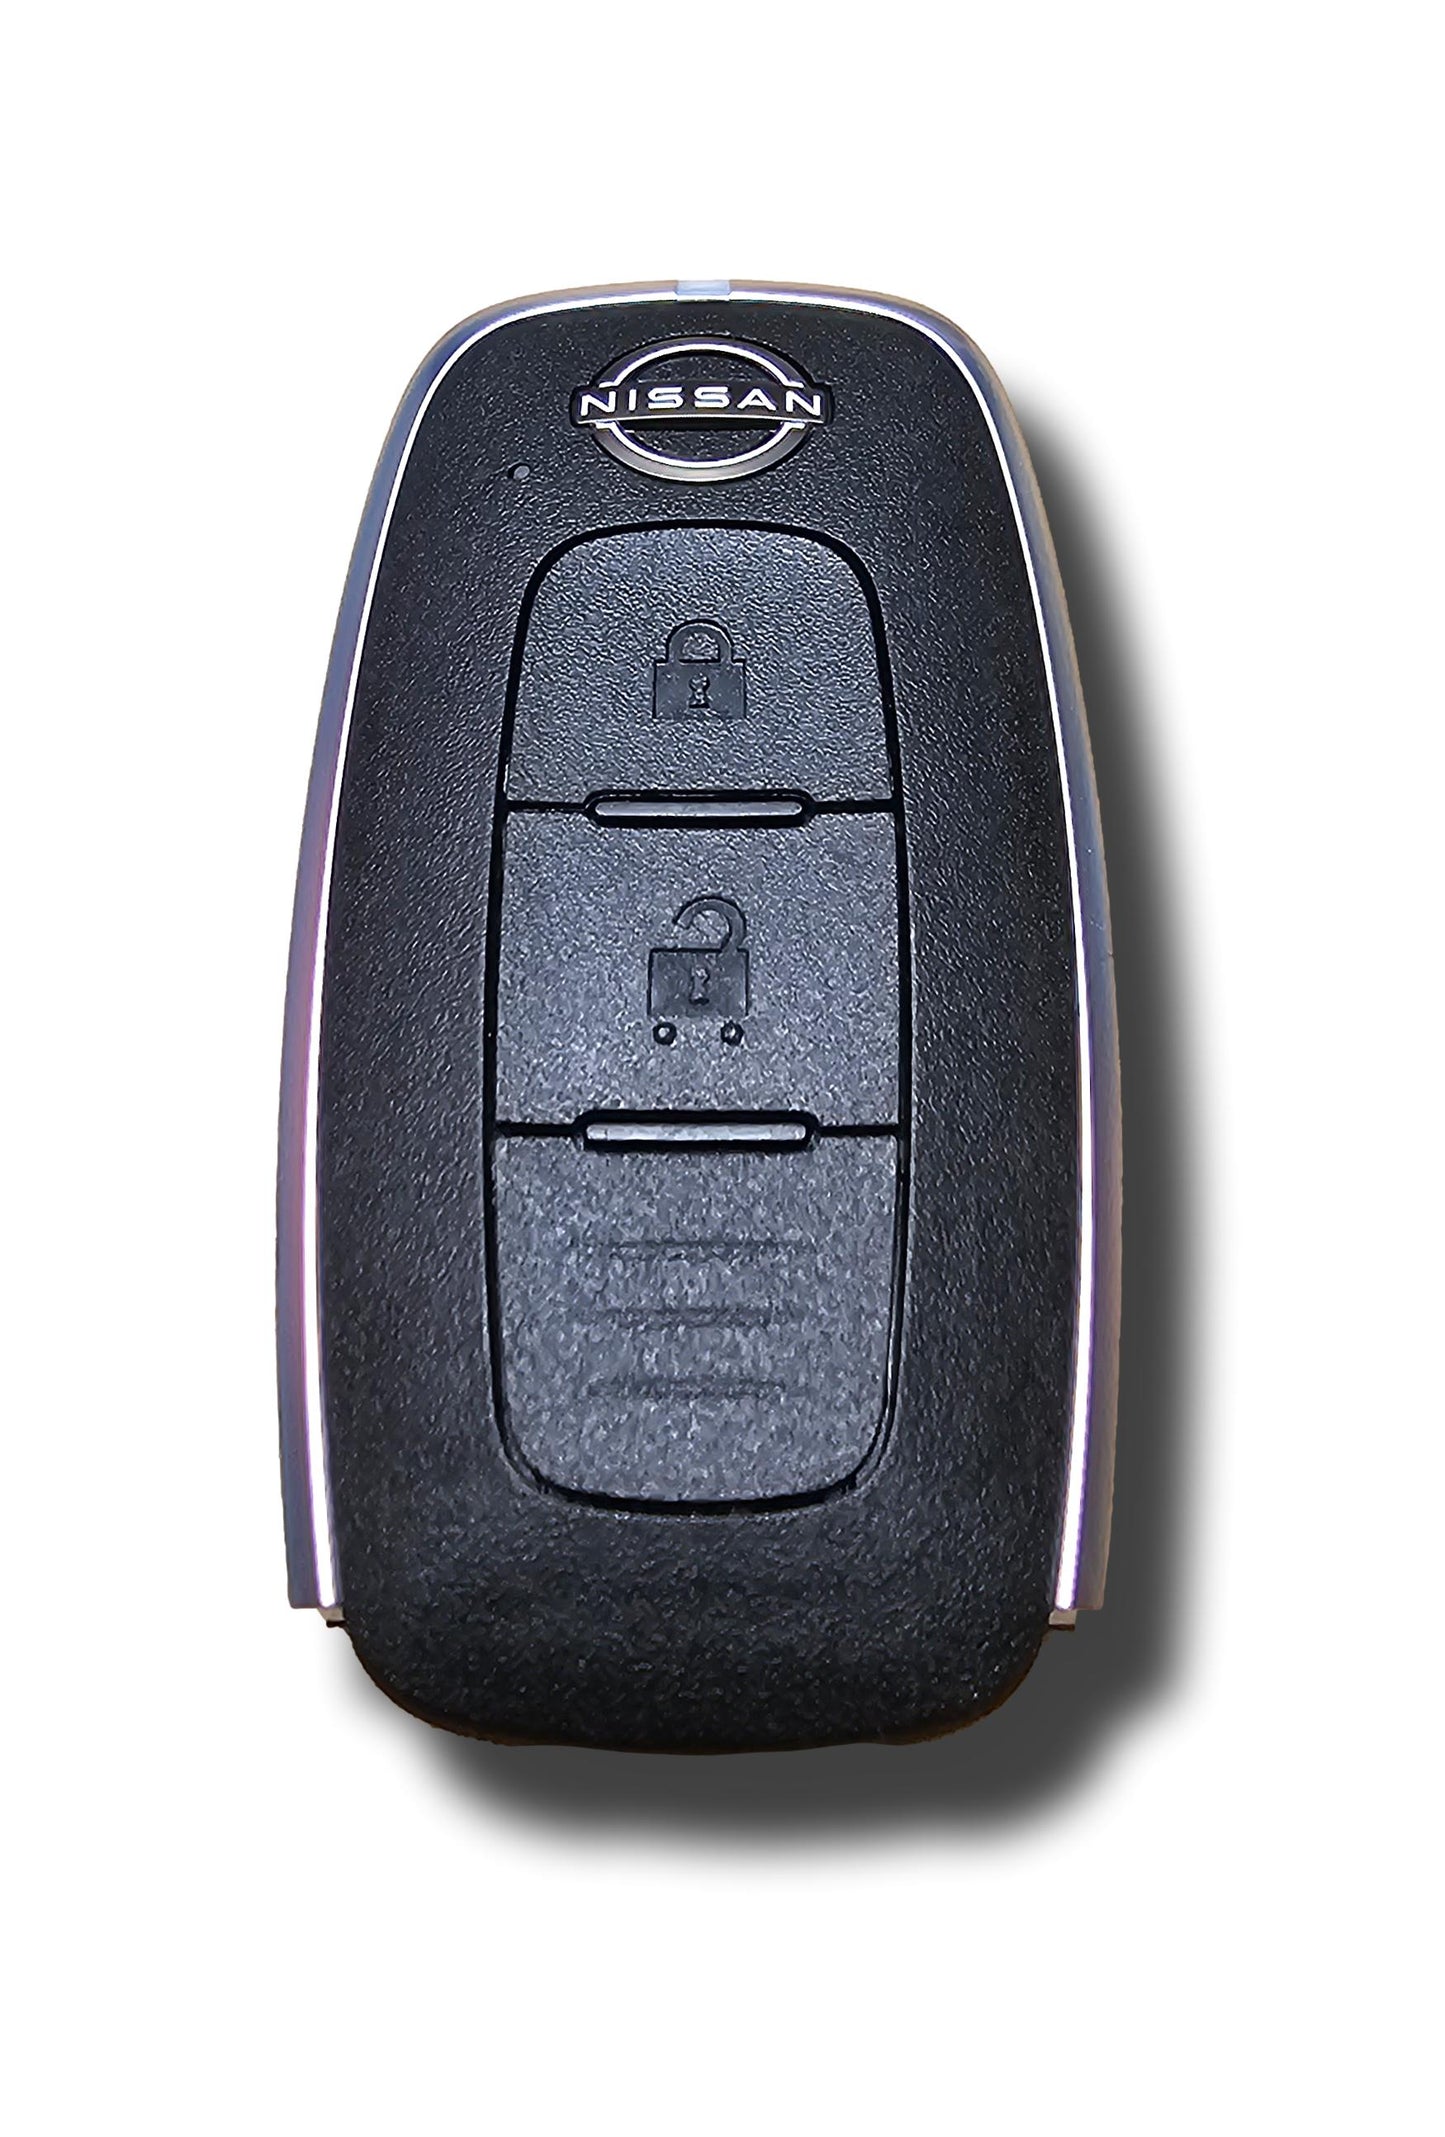 Genuine New Nissan Qashqai Remote Key Keyless Remote Entry 285E35MS0C S180146106